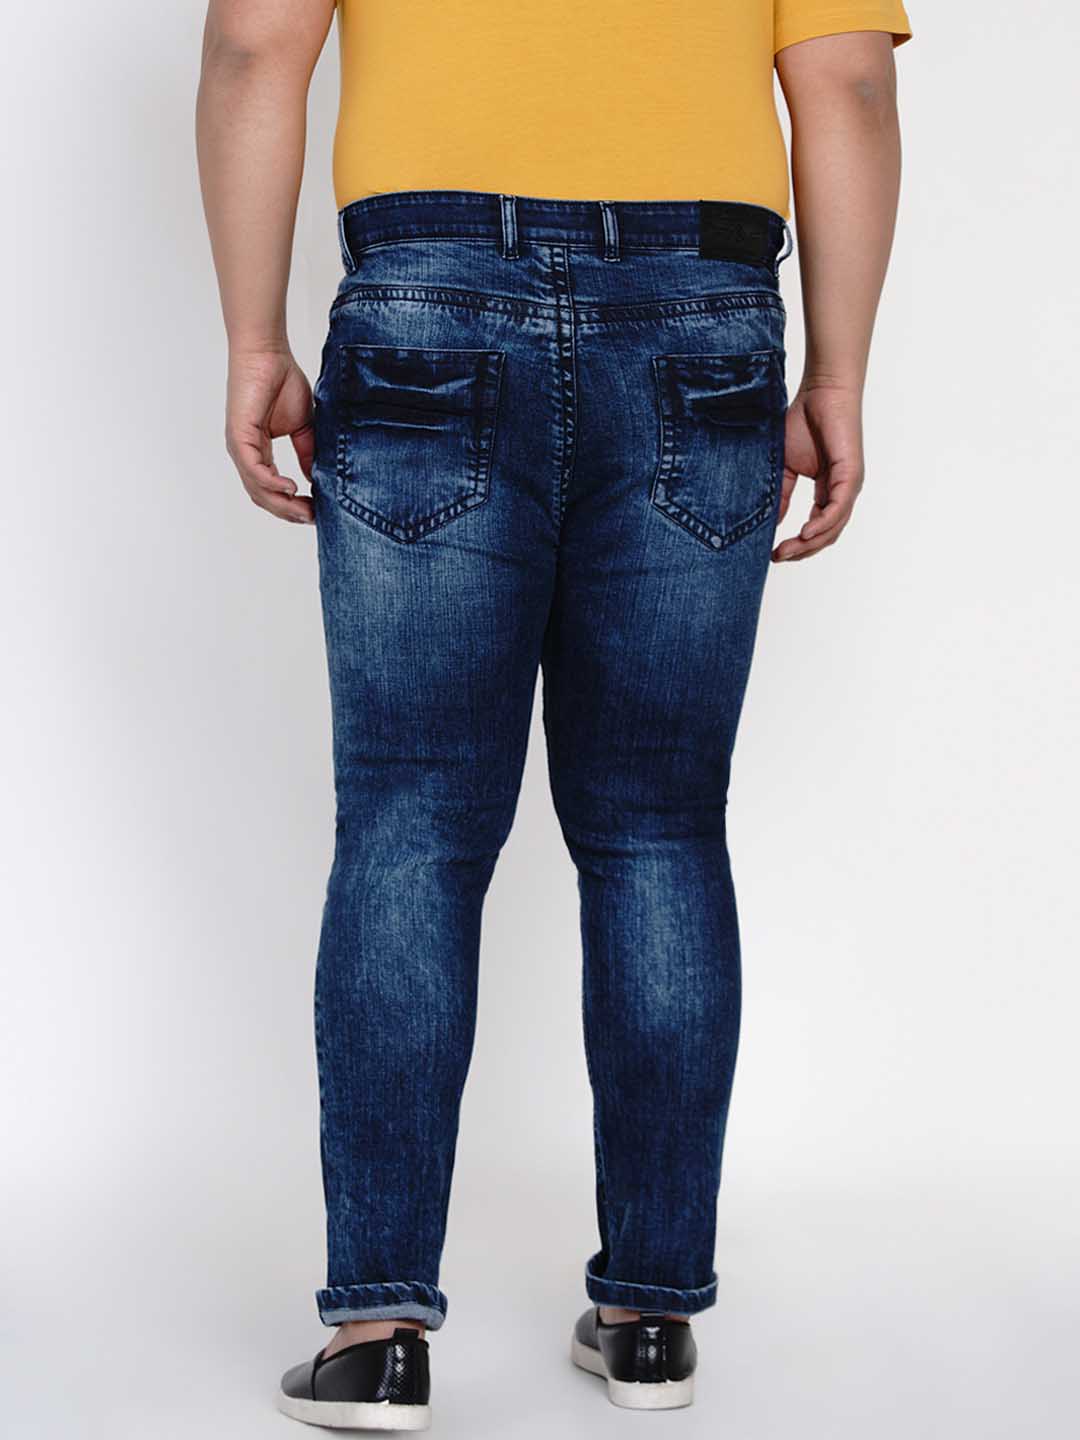 bottomwear/jeans/JPJ12121/jpj12121-4.jpg